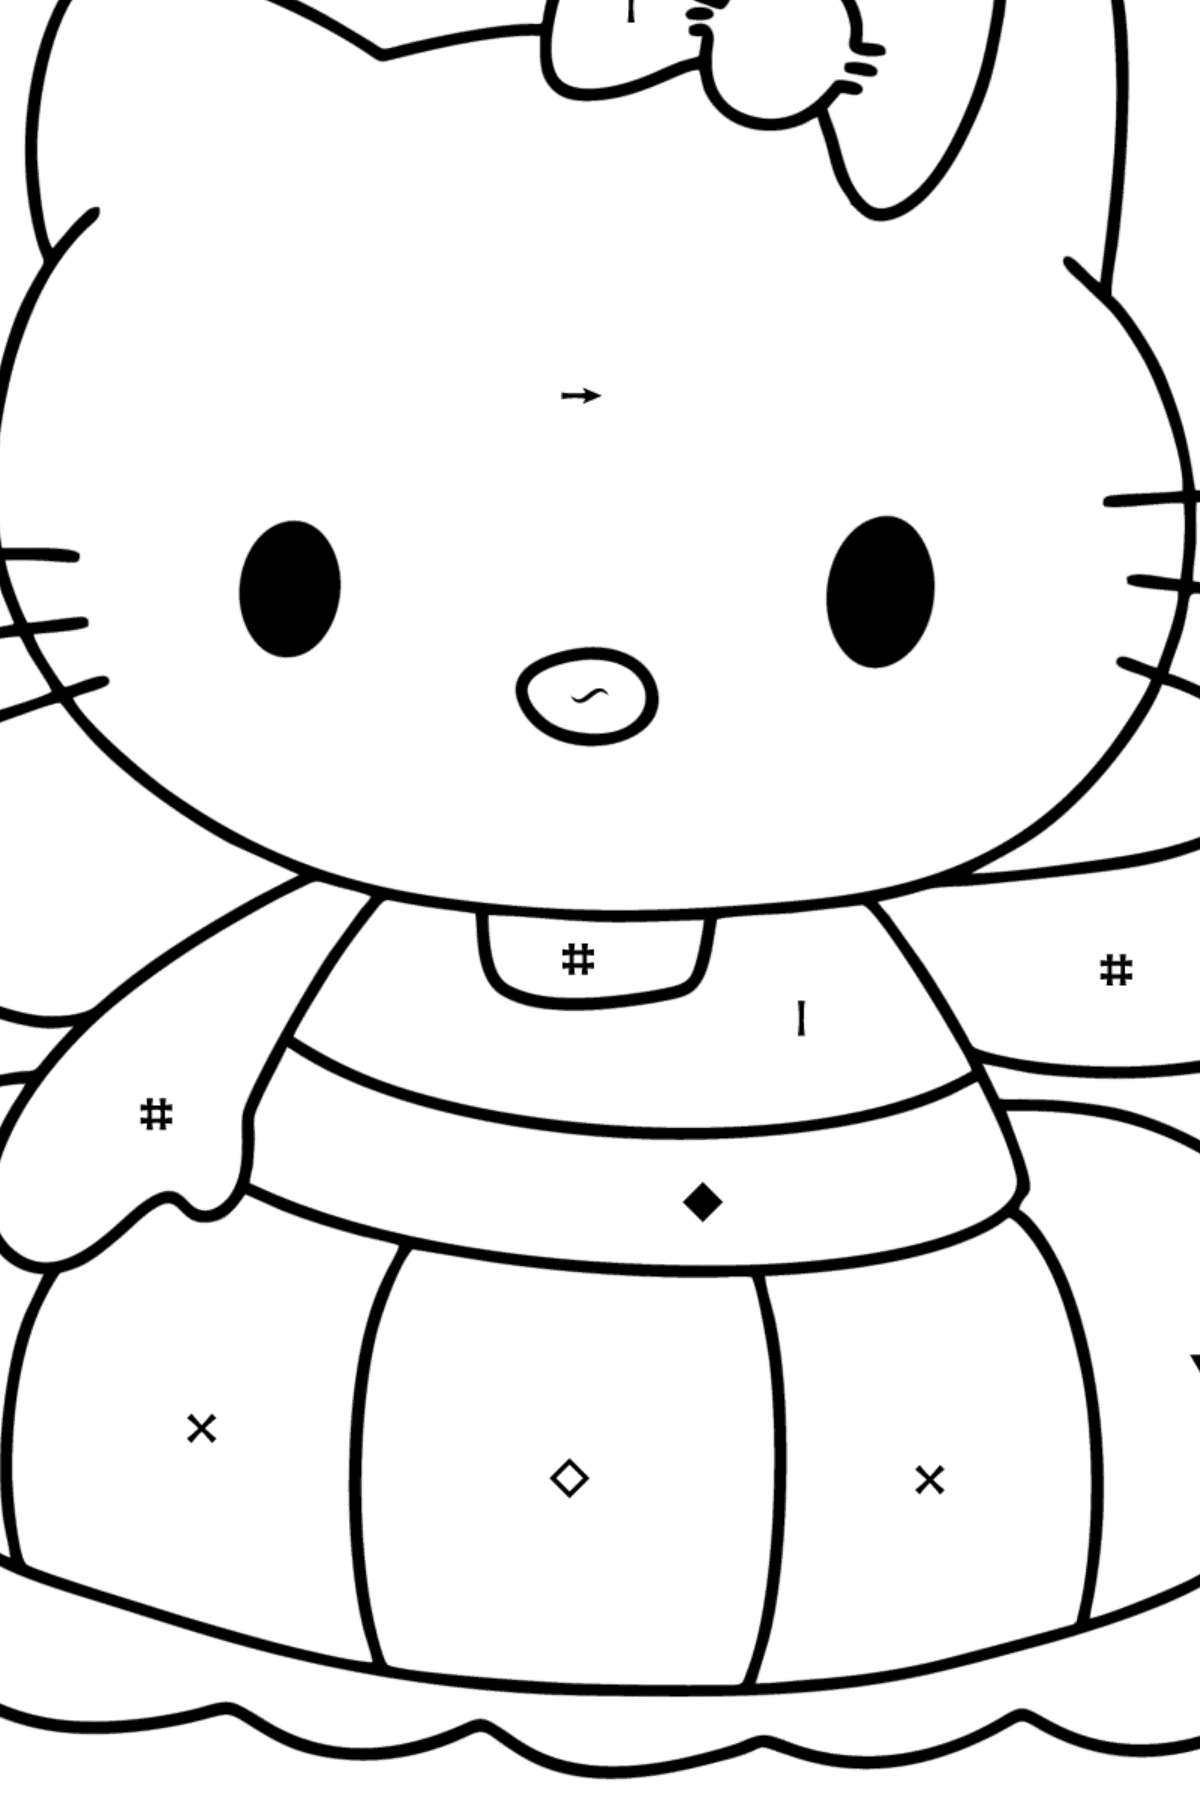 Boyama sayfası Hello Kitty yüzer - Sembollerle Boyama çocuklar için